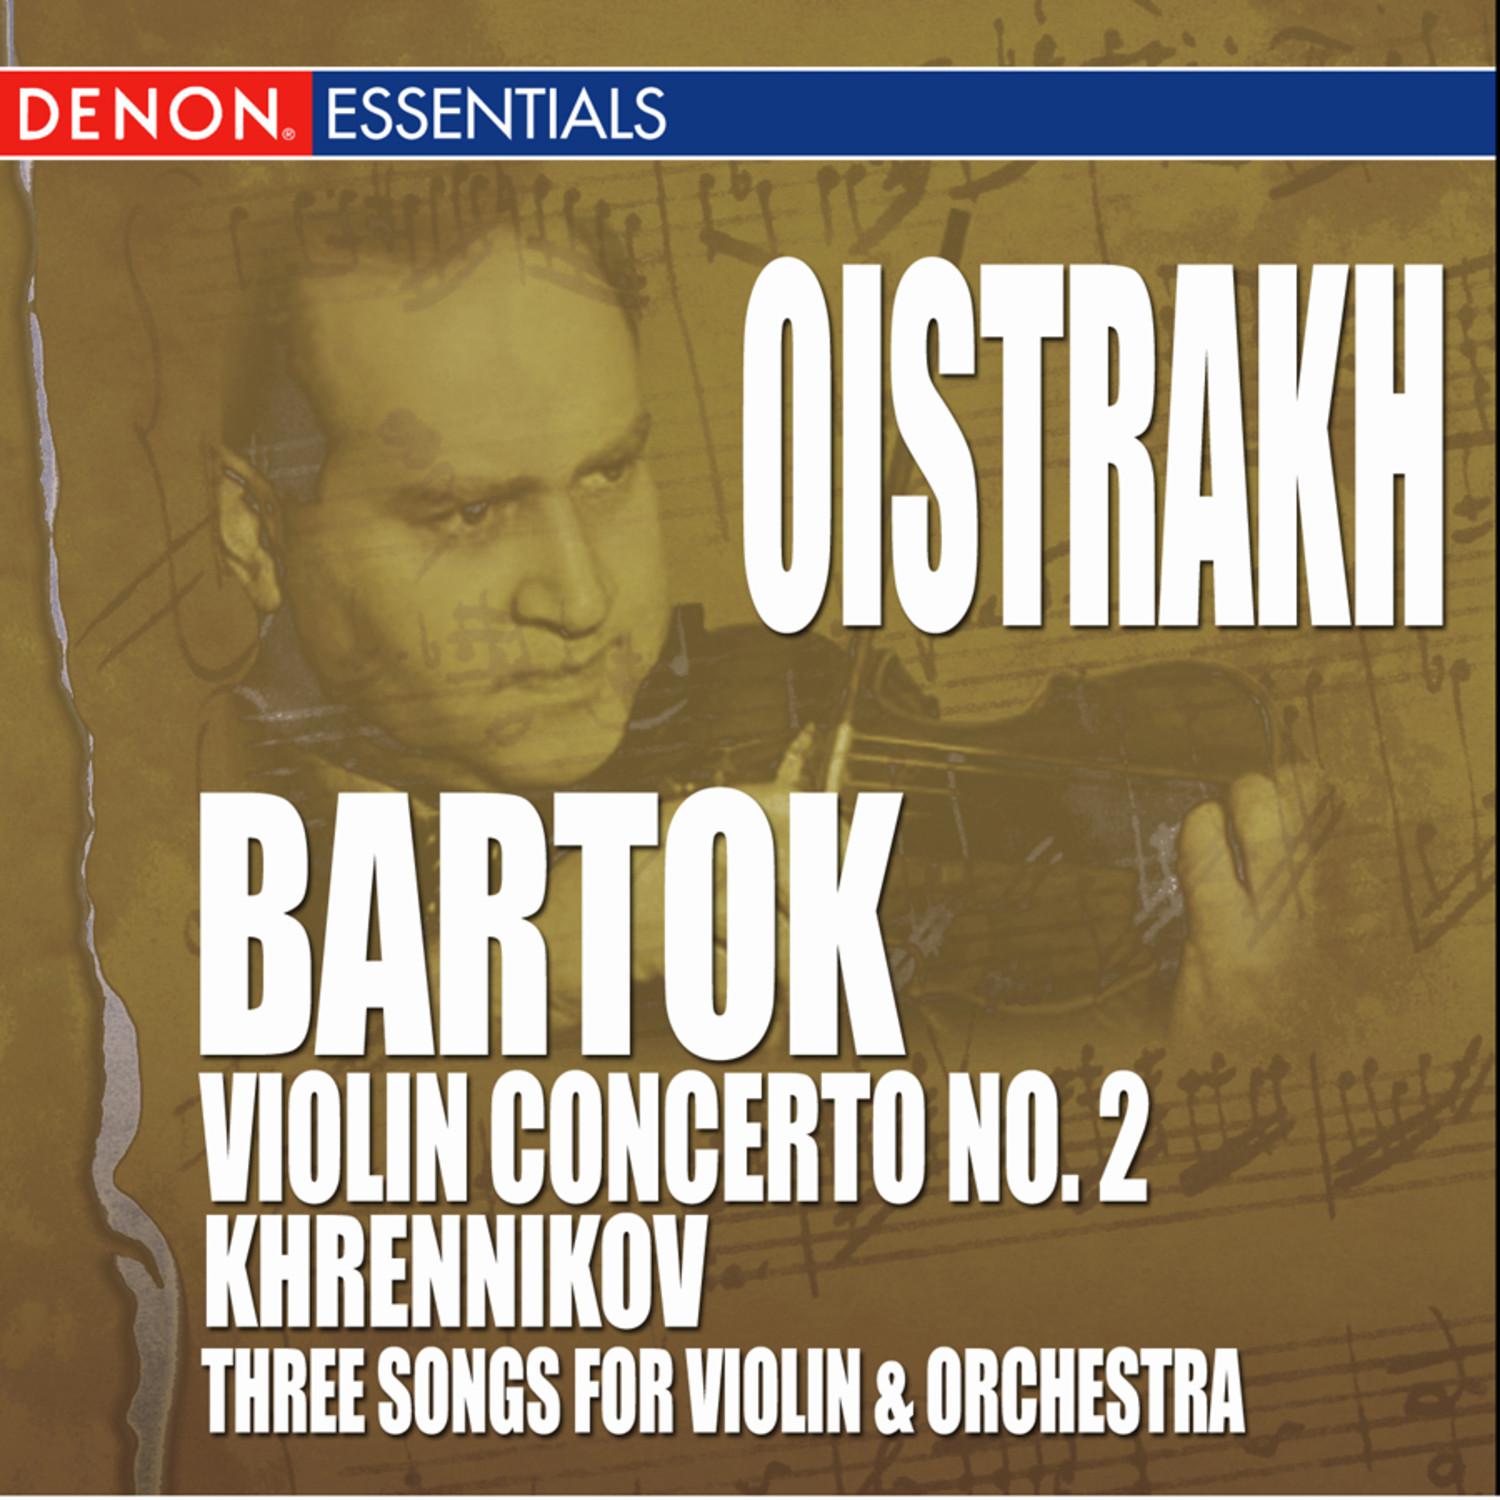 Concerto for Violin & Orchestra No. 2: I. Allegro non troppo